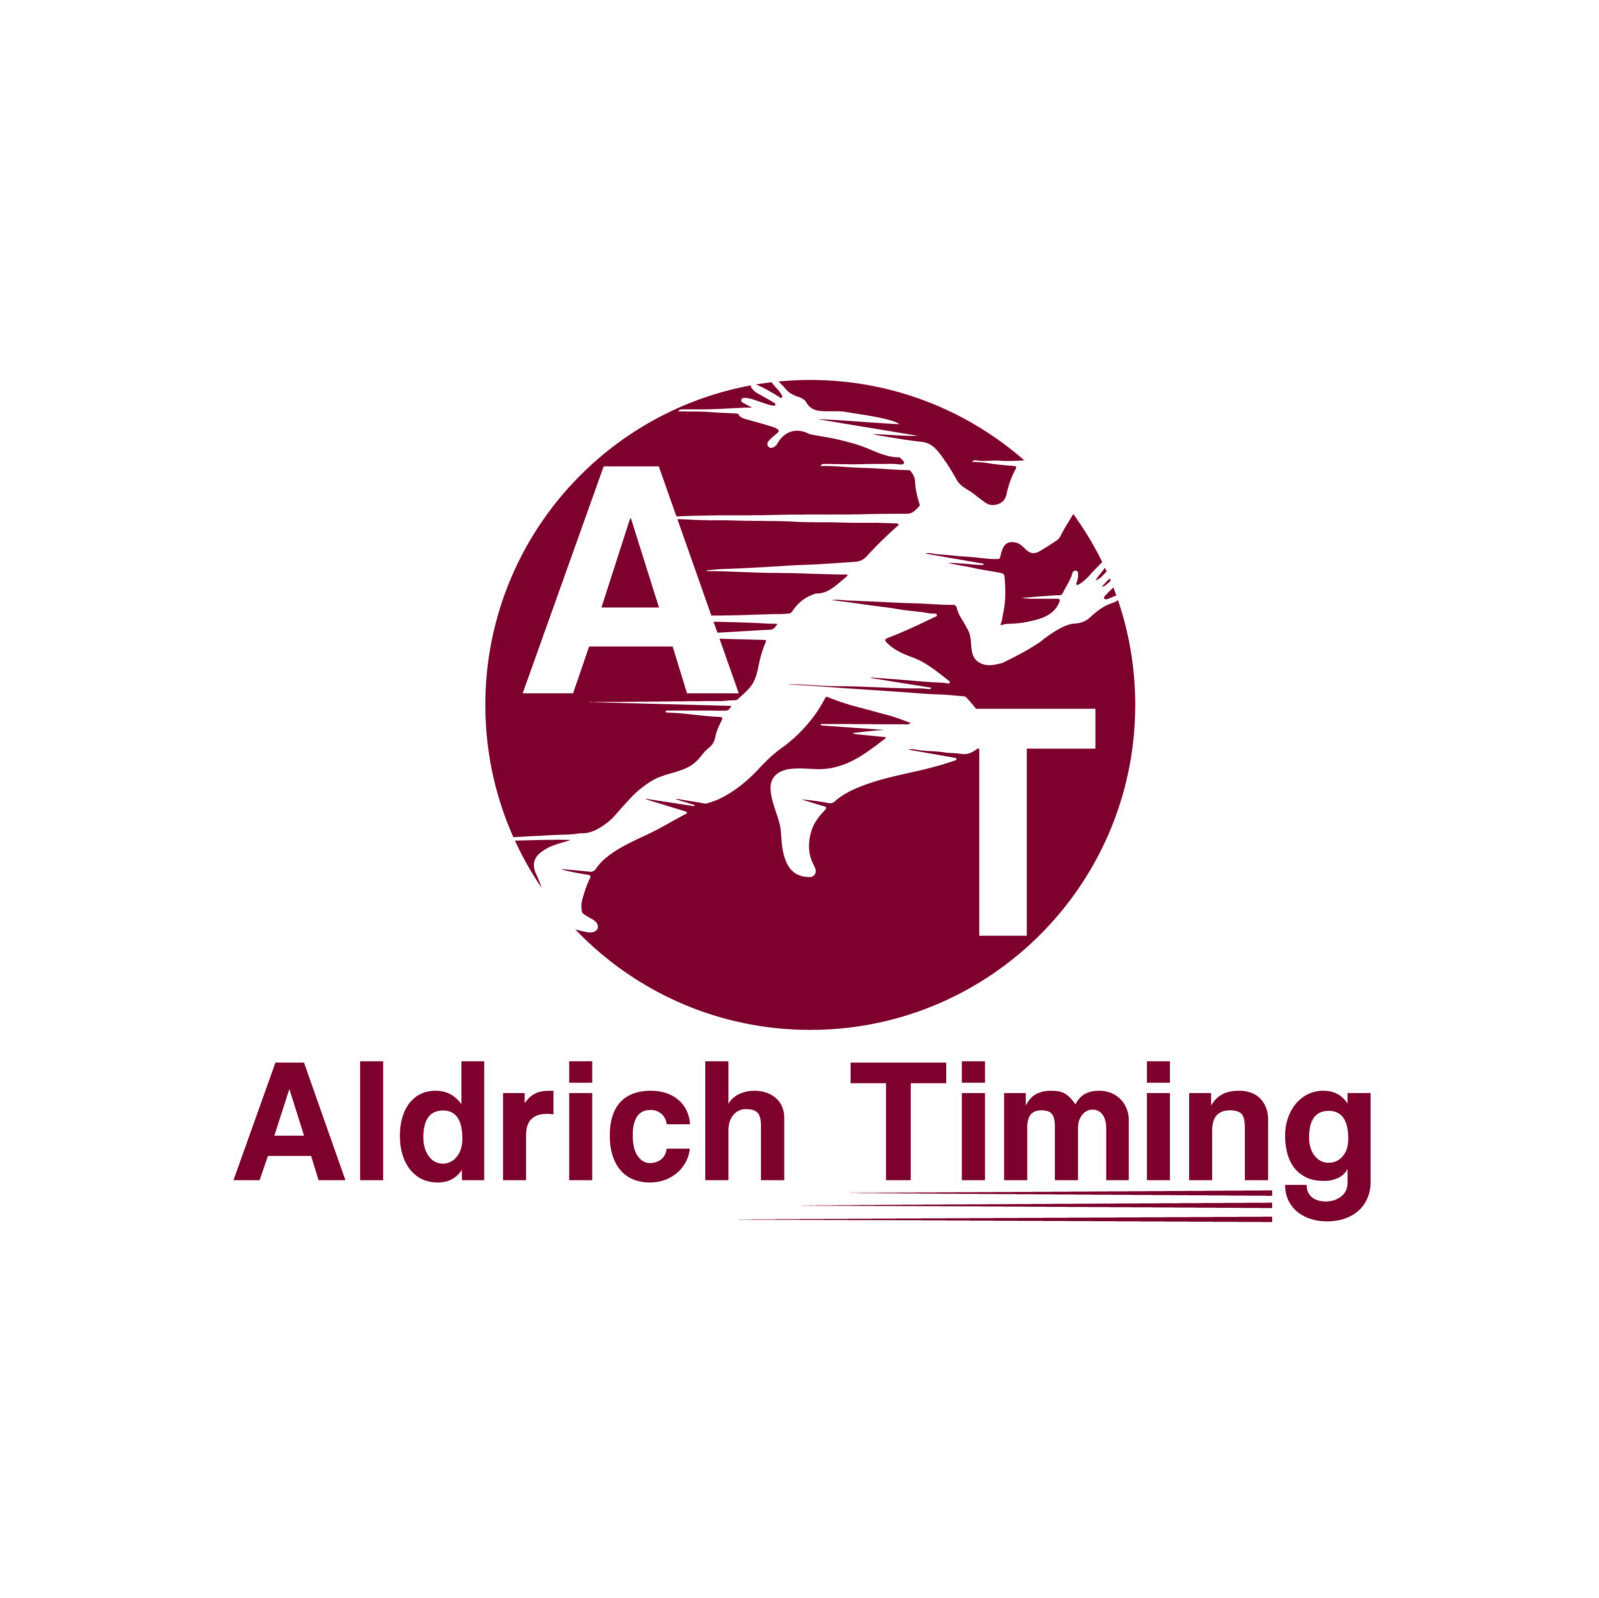 Aldrich Timing